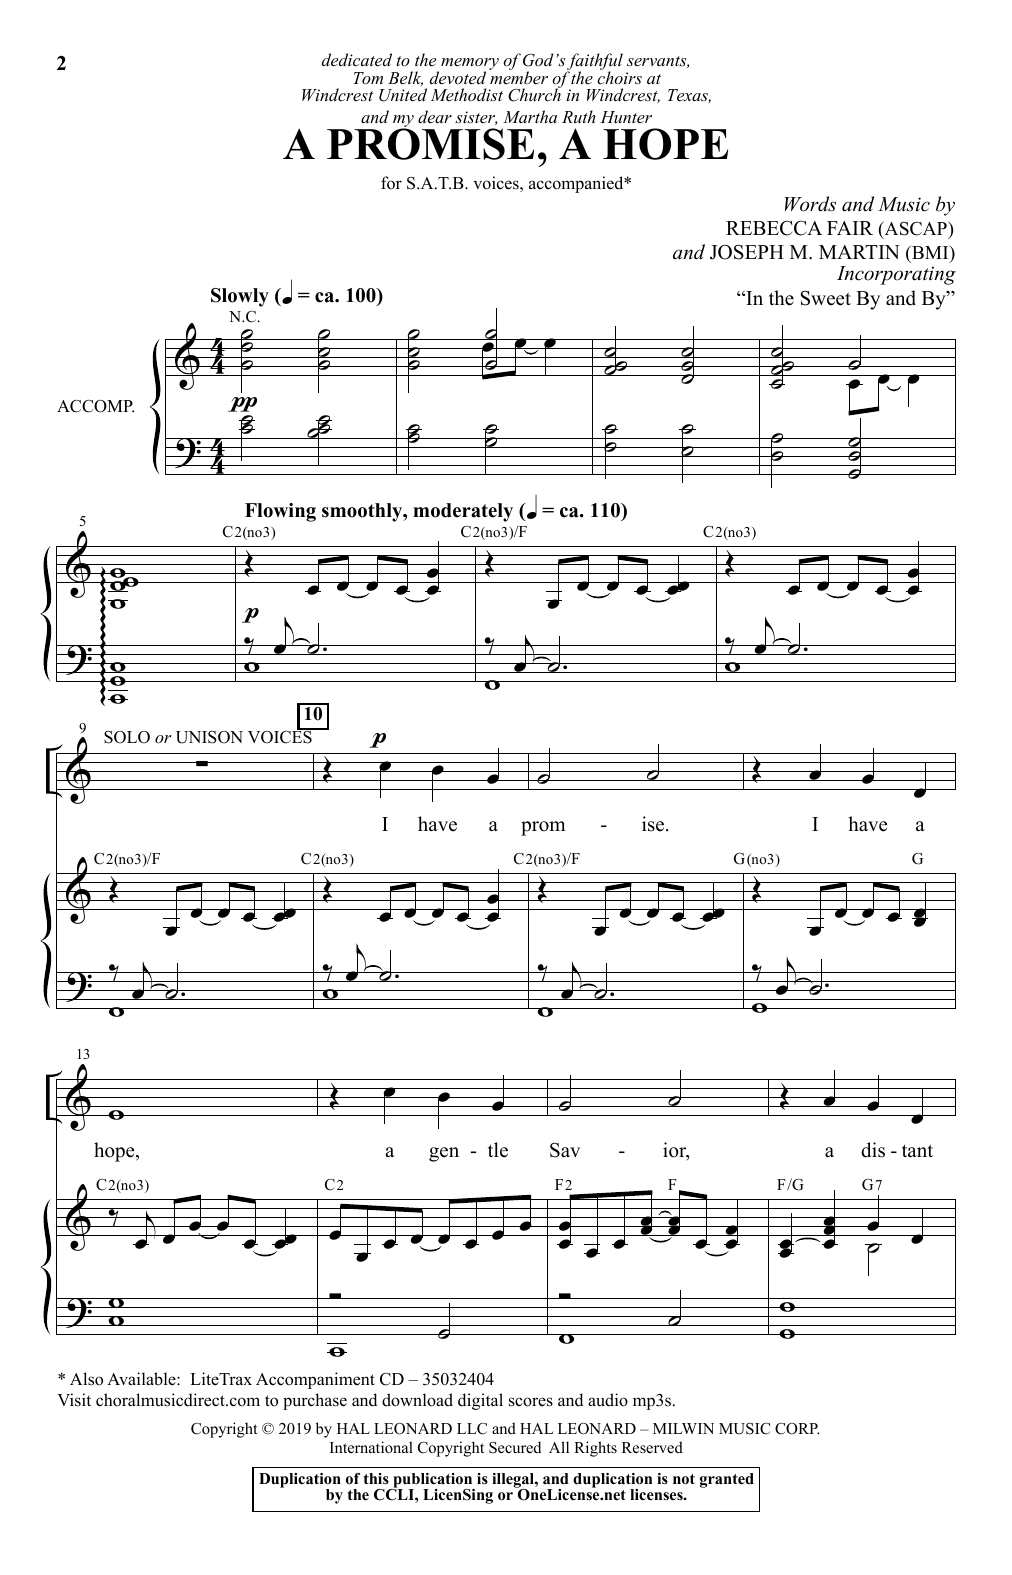 Rebecca Fair & Joseph M. Martin A Promise, A Hope sheet music notes and chords arranged for SATB Choir